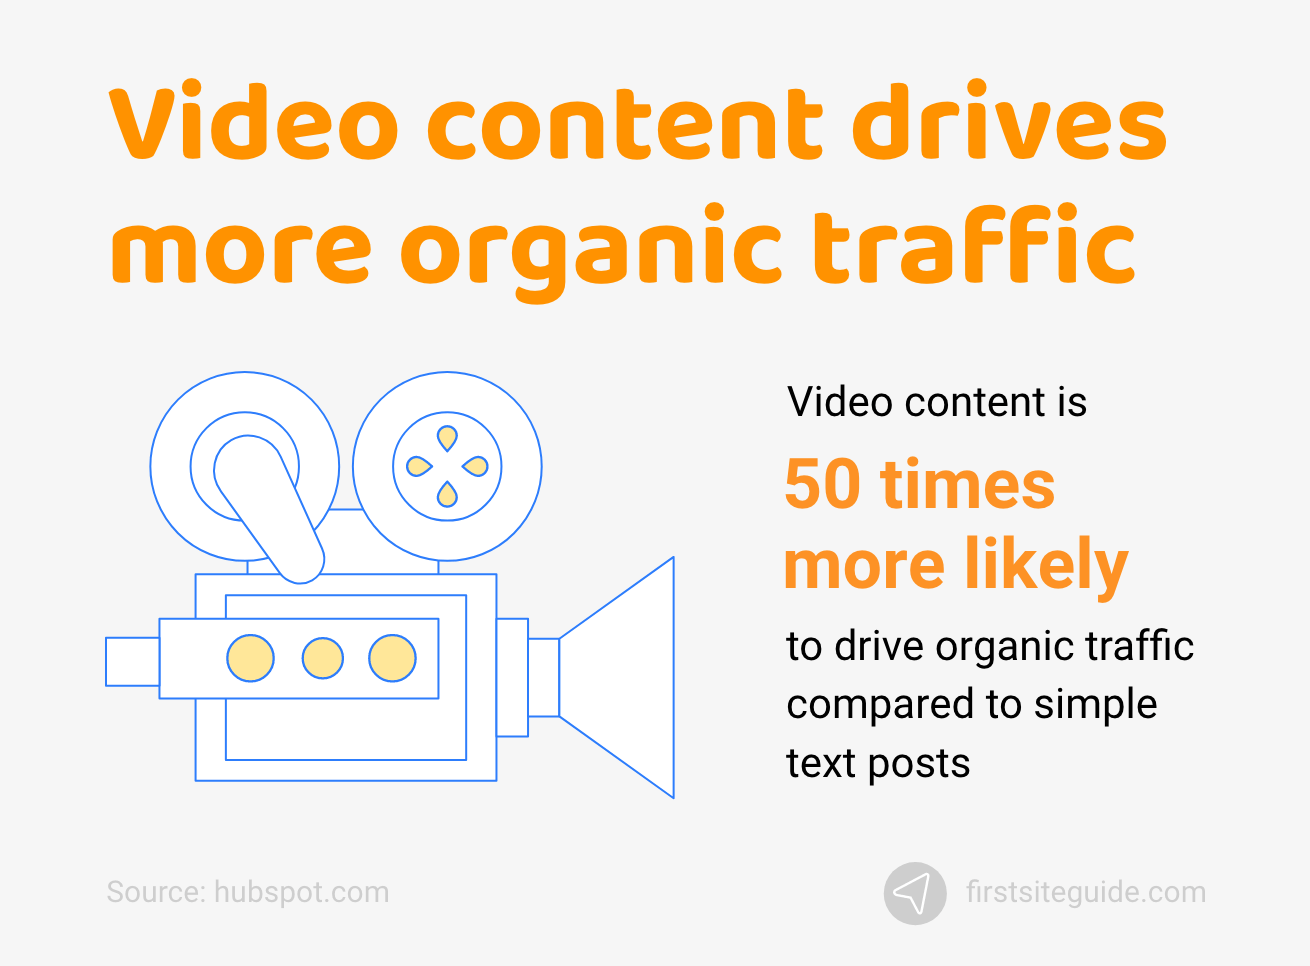 Conținutul video generează mai mult trafic organic